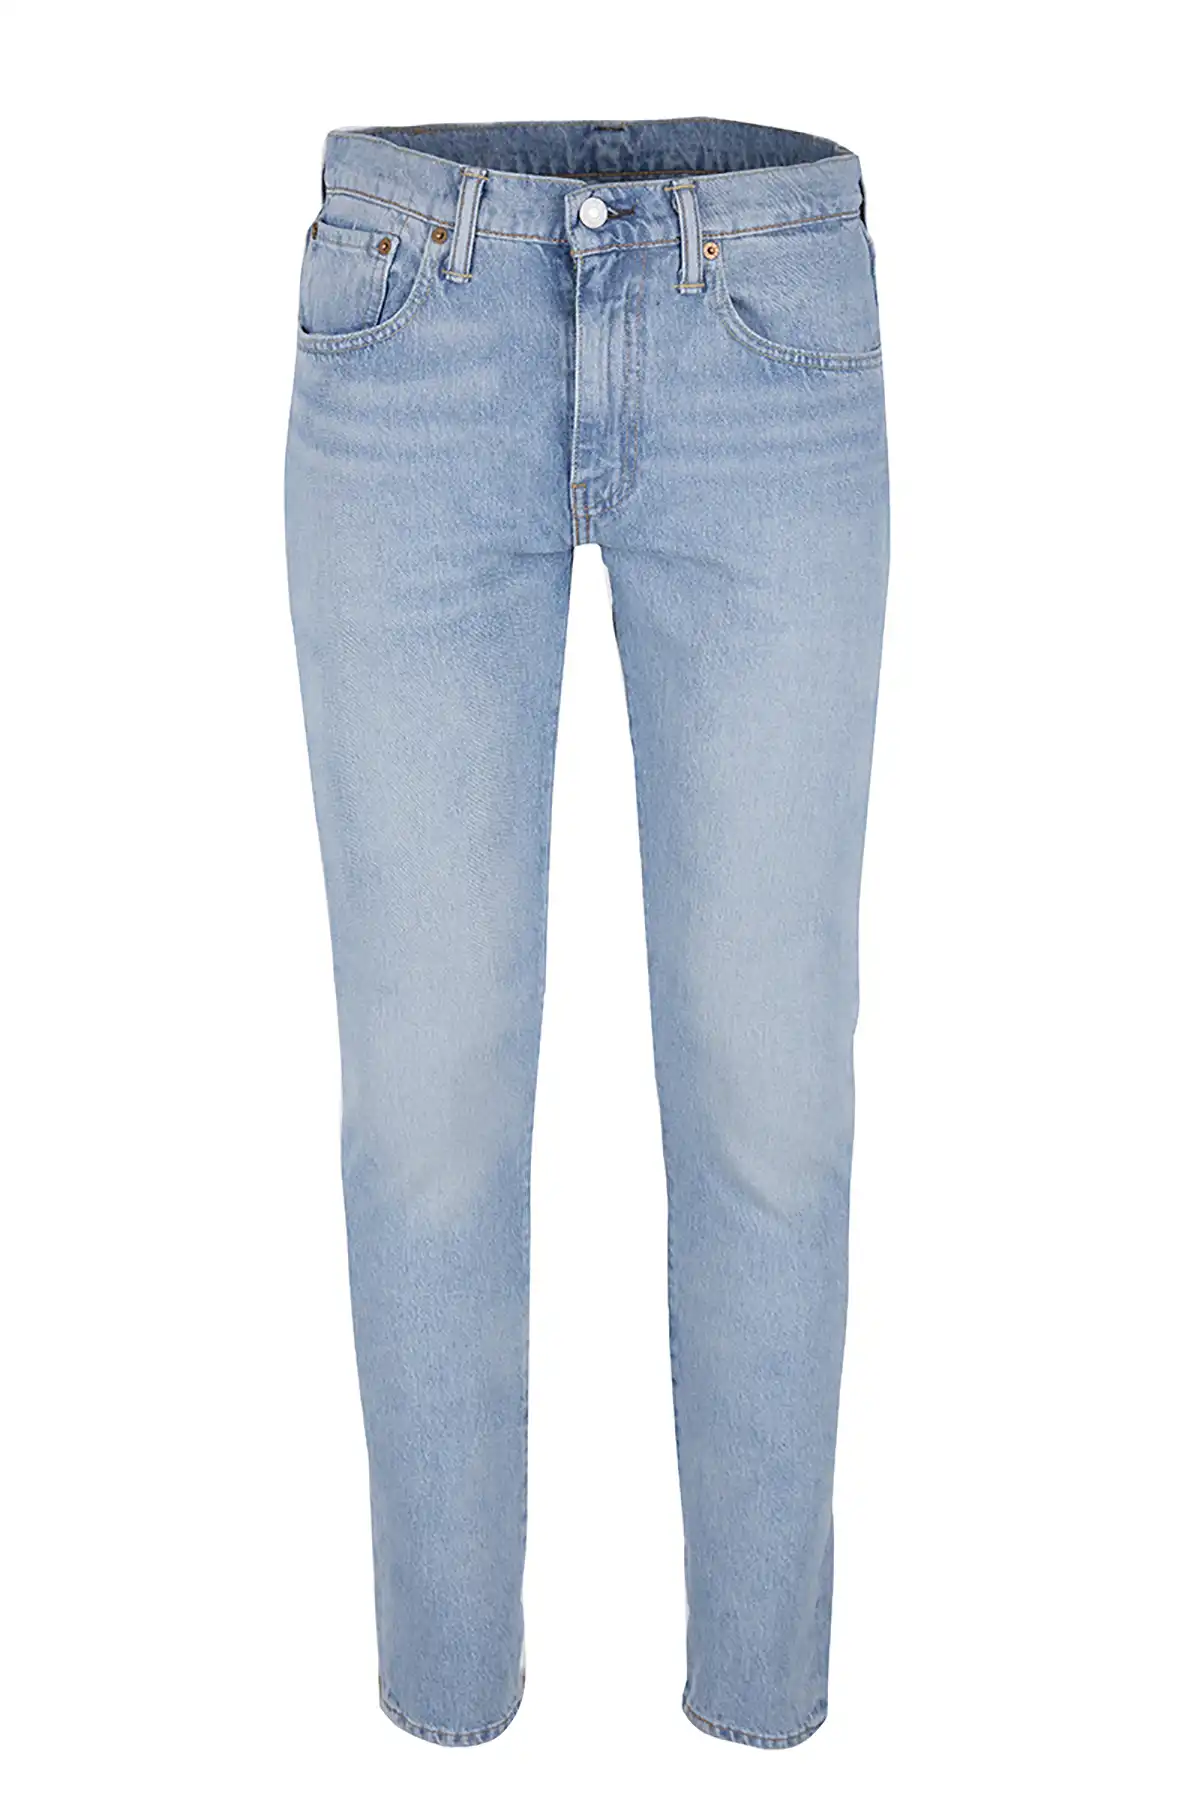 levis jeans pent